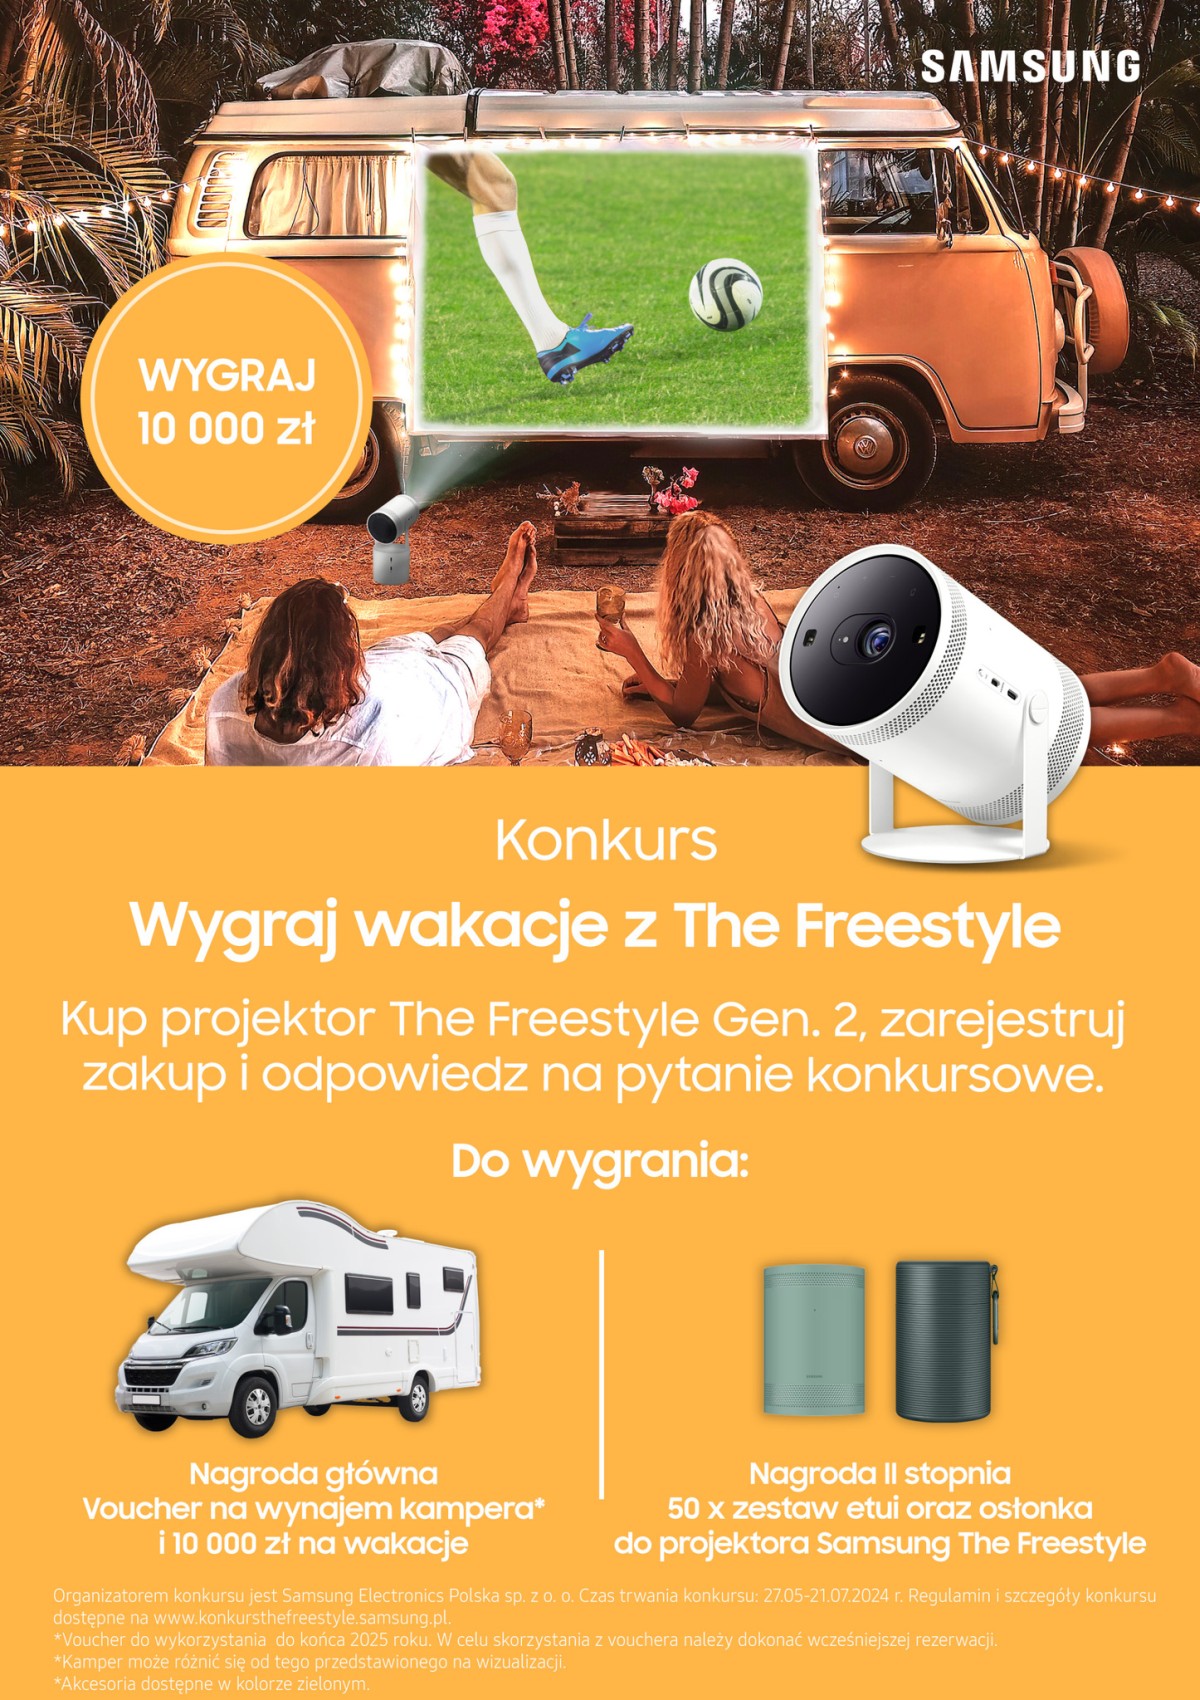 Samsung The Freestyle Gen.2 baner konkursowy